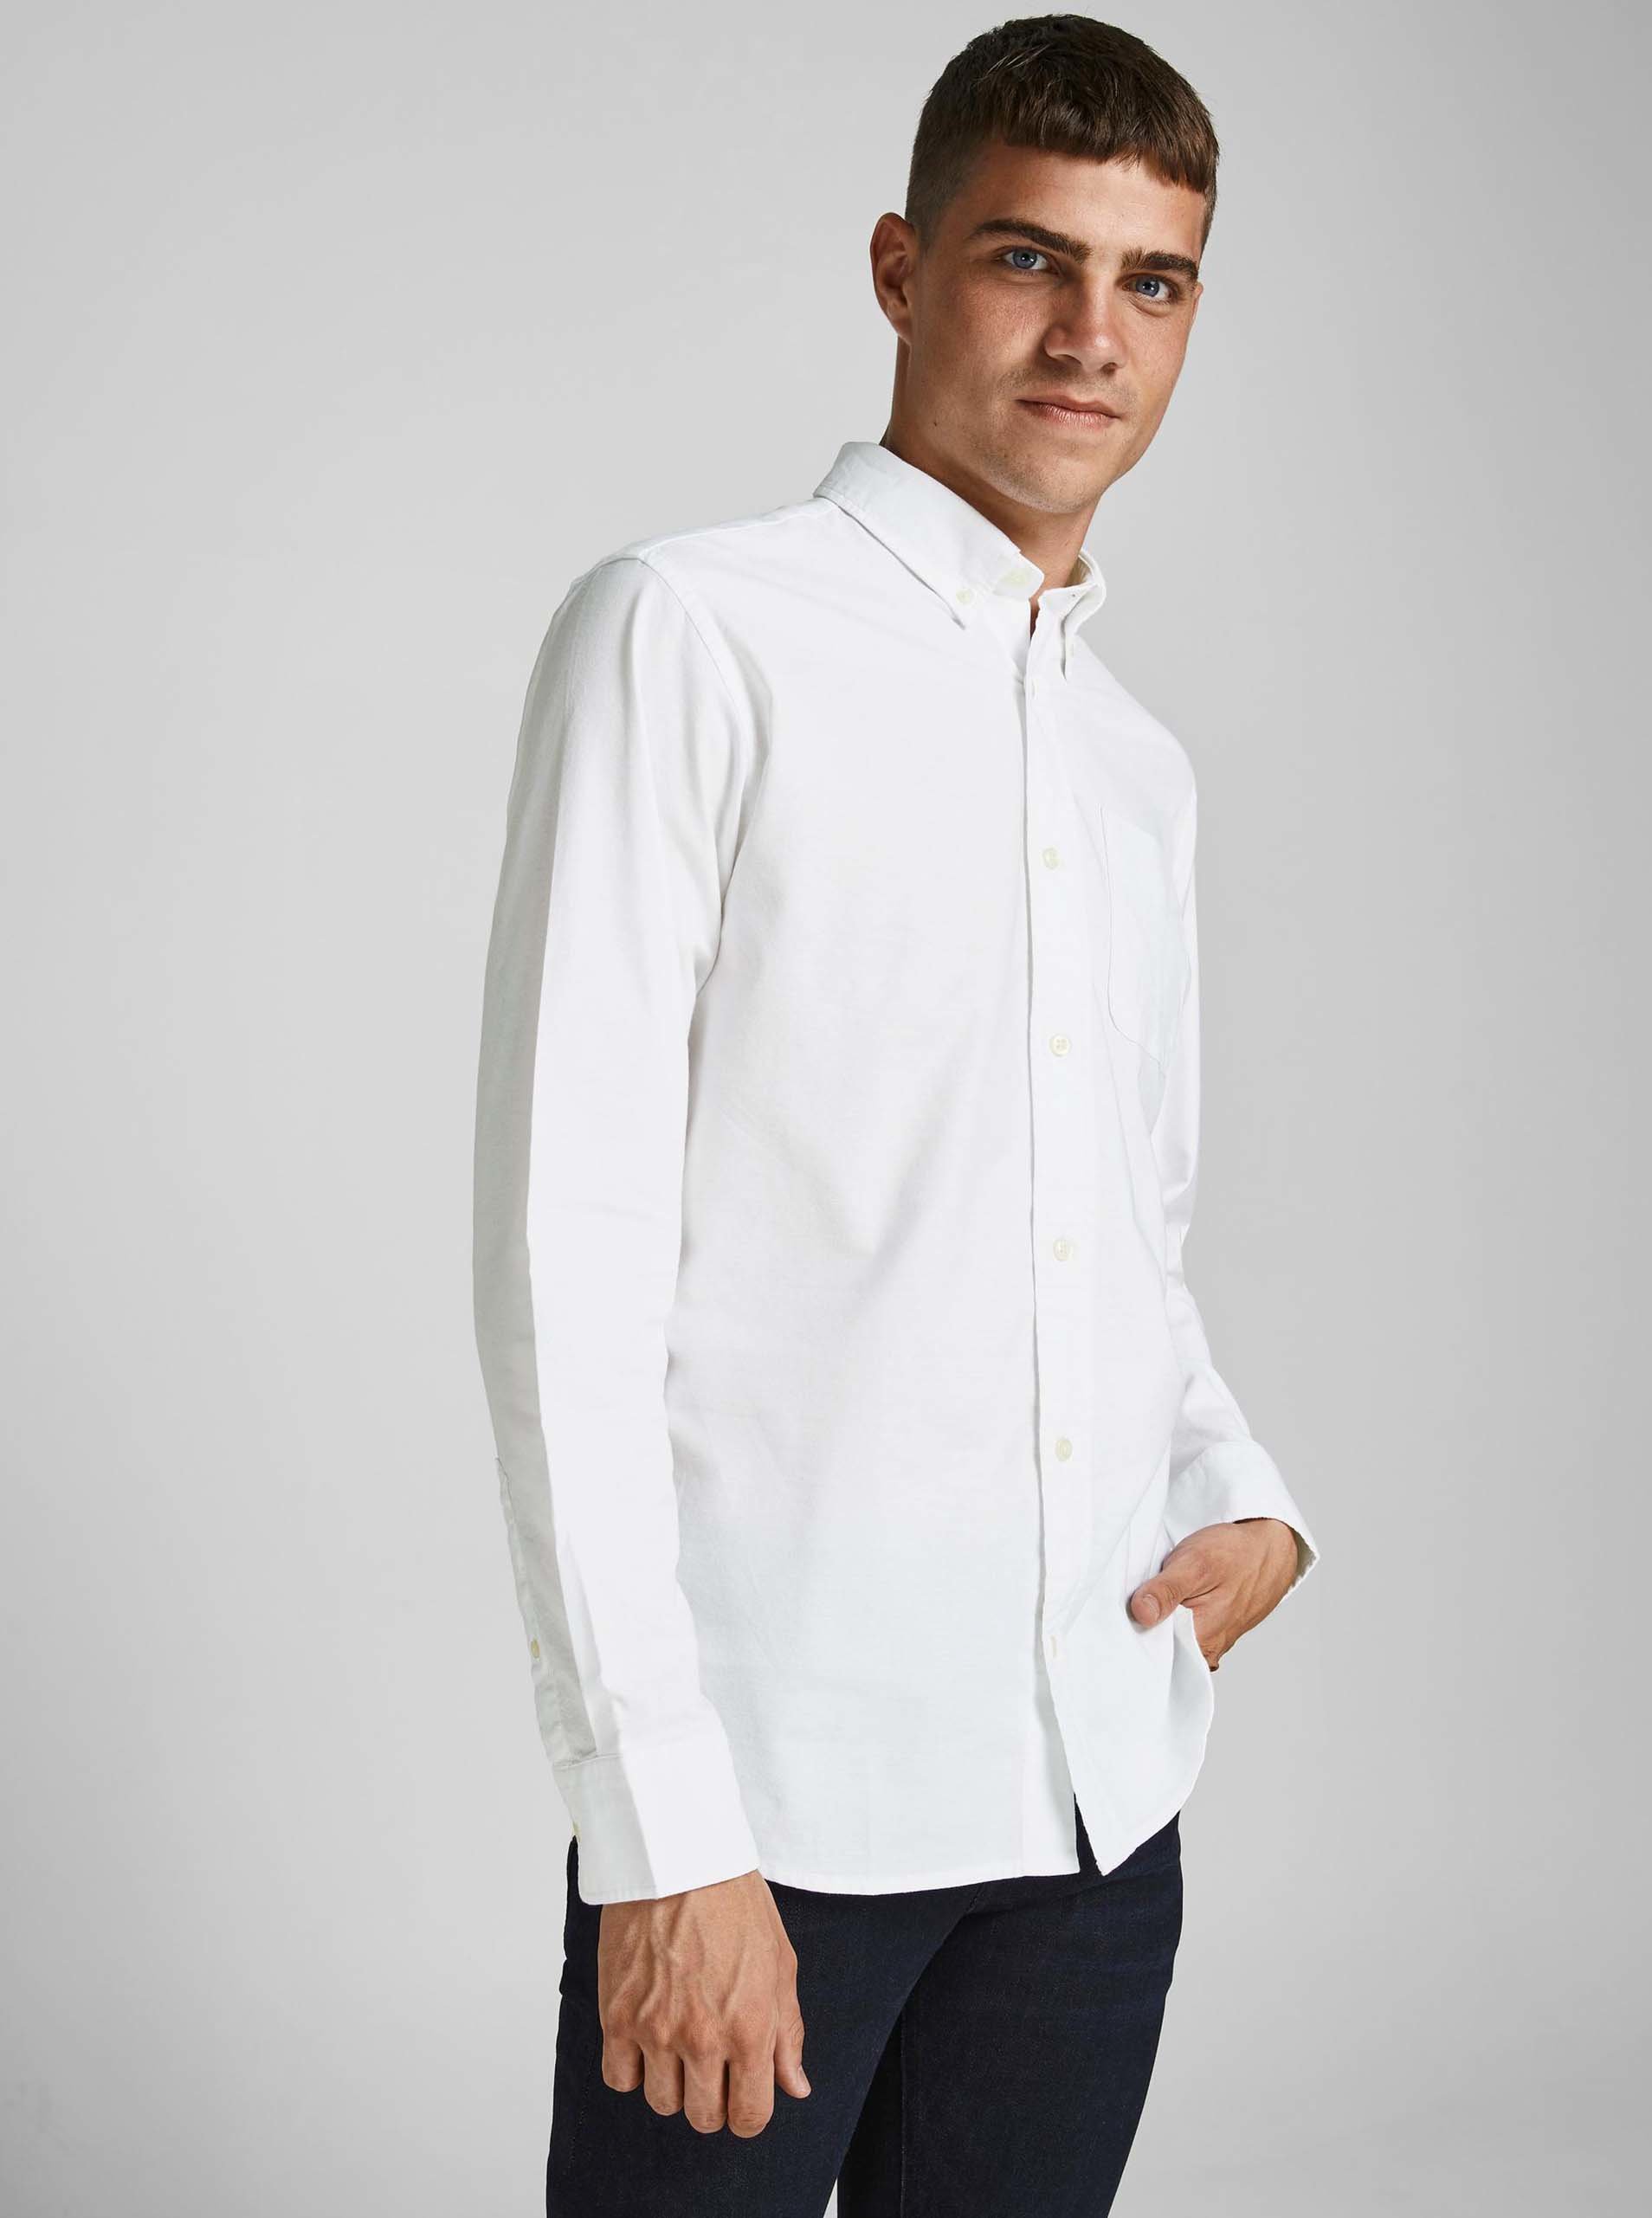 E-shop Bílá košile Jack & Jones Blubrook